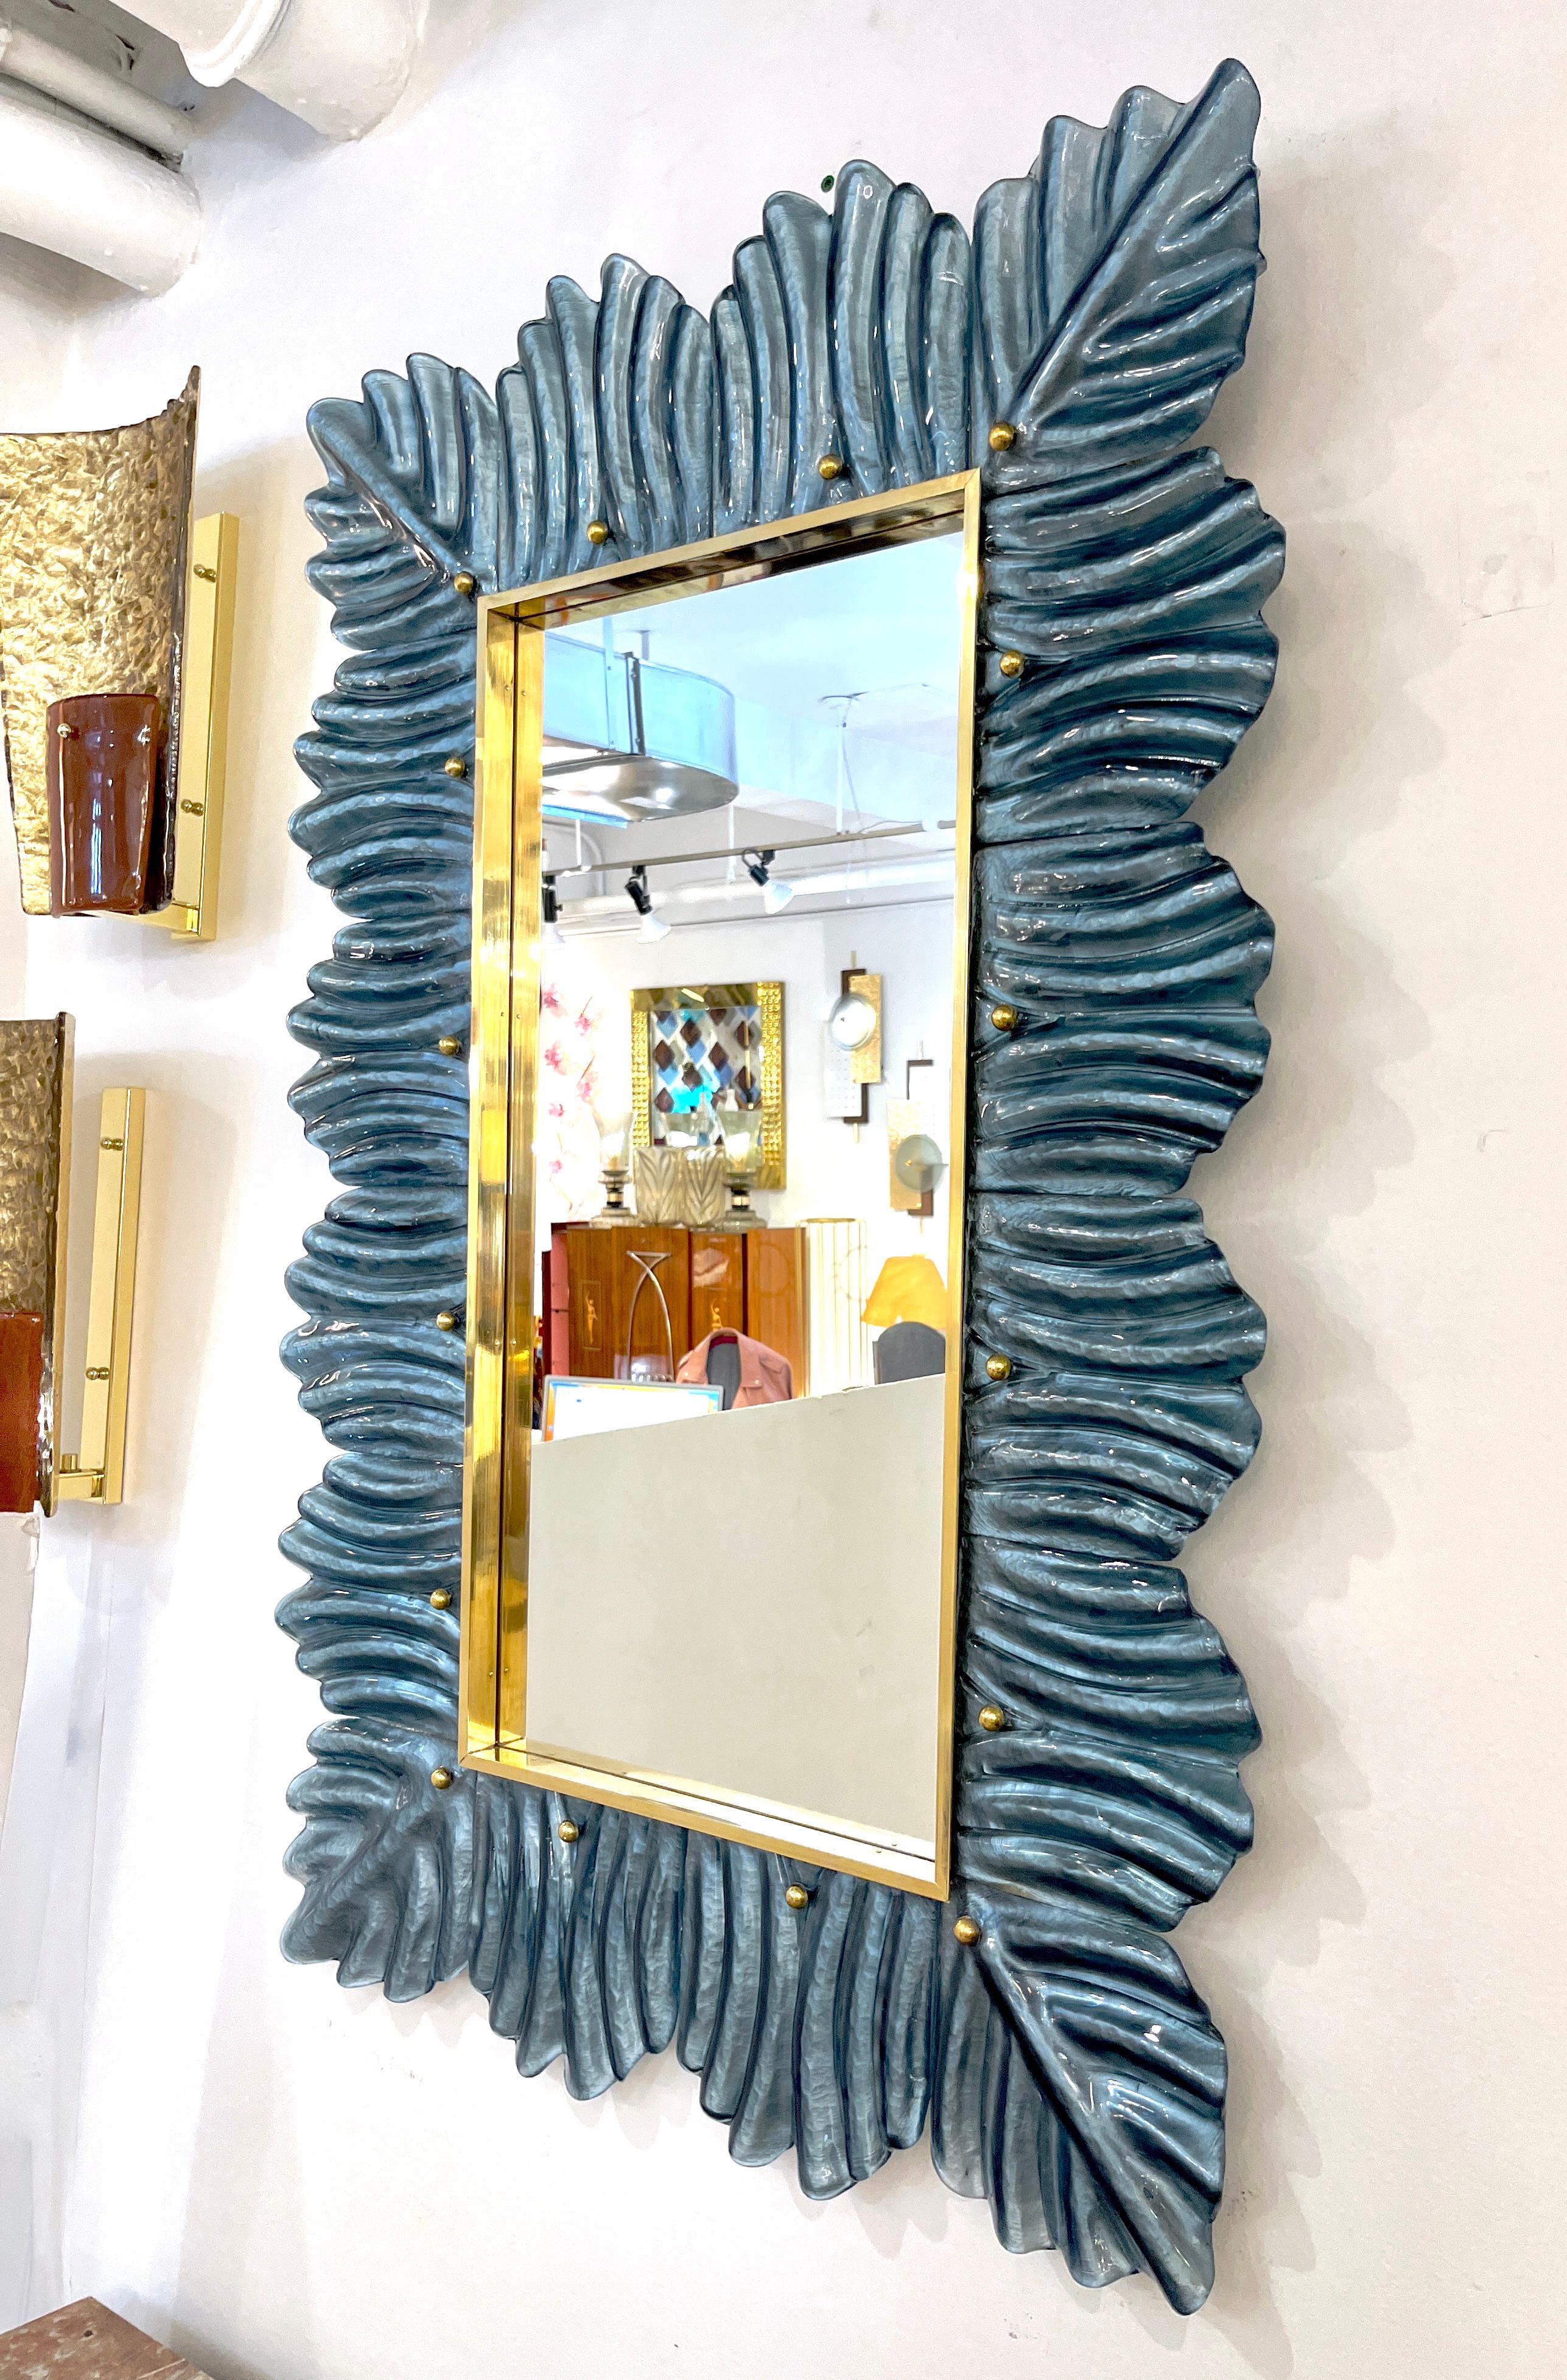 Miroir mural rectangulaire contemporain vénitien de style Couture, fabriqué sur mesure en Italie, encadré d'une épaisse bordure en verre d'art soufflé de Murano, avec un motif organique de feuilles cannelées de style Art Deco. Haute qualité